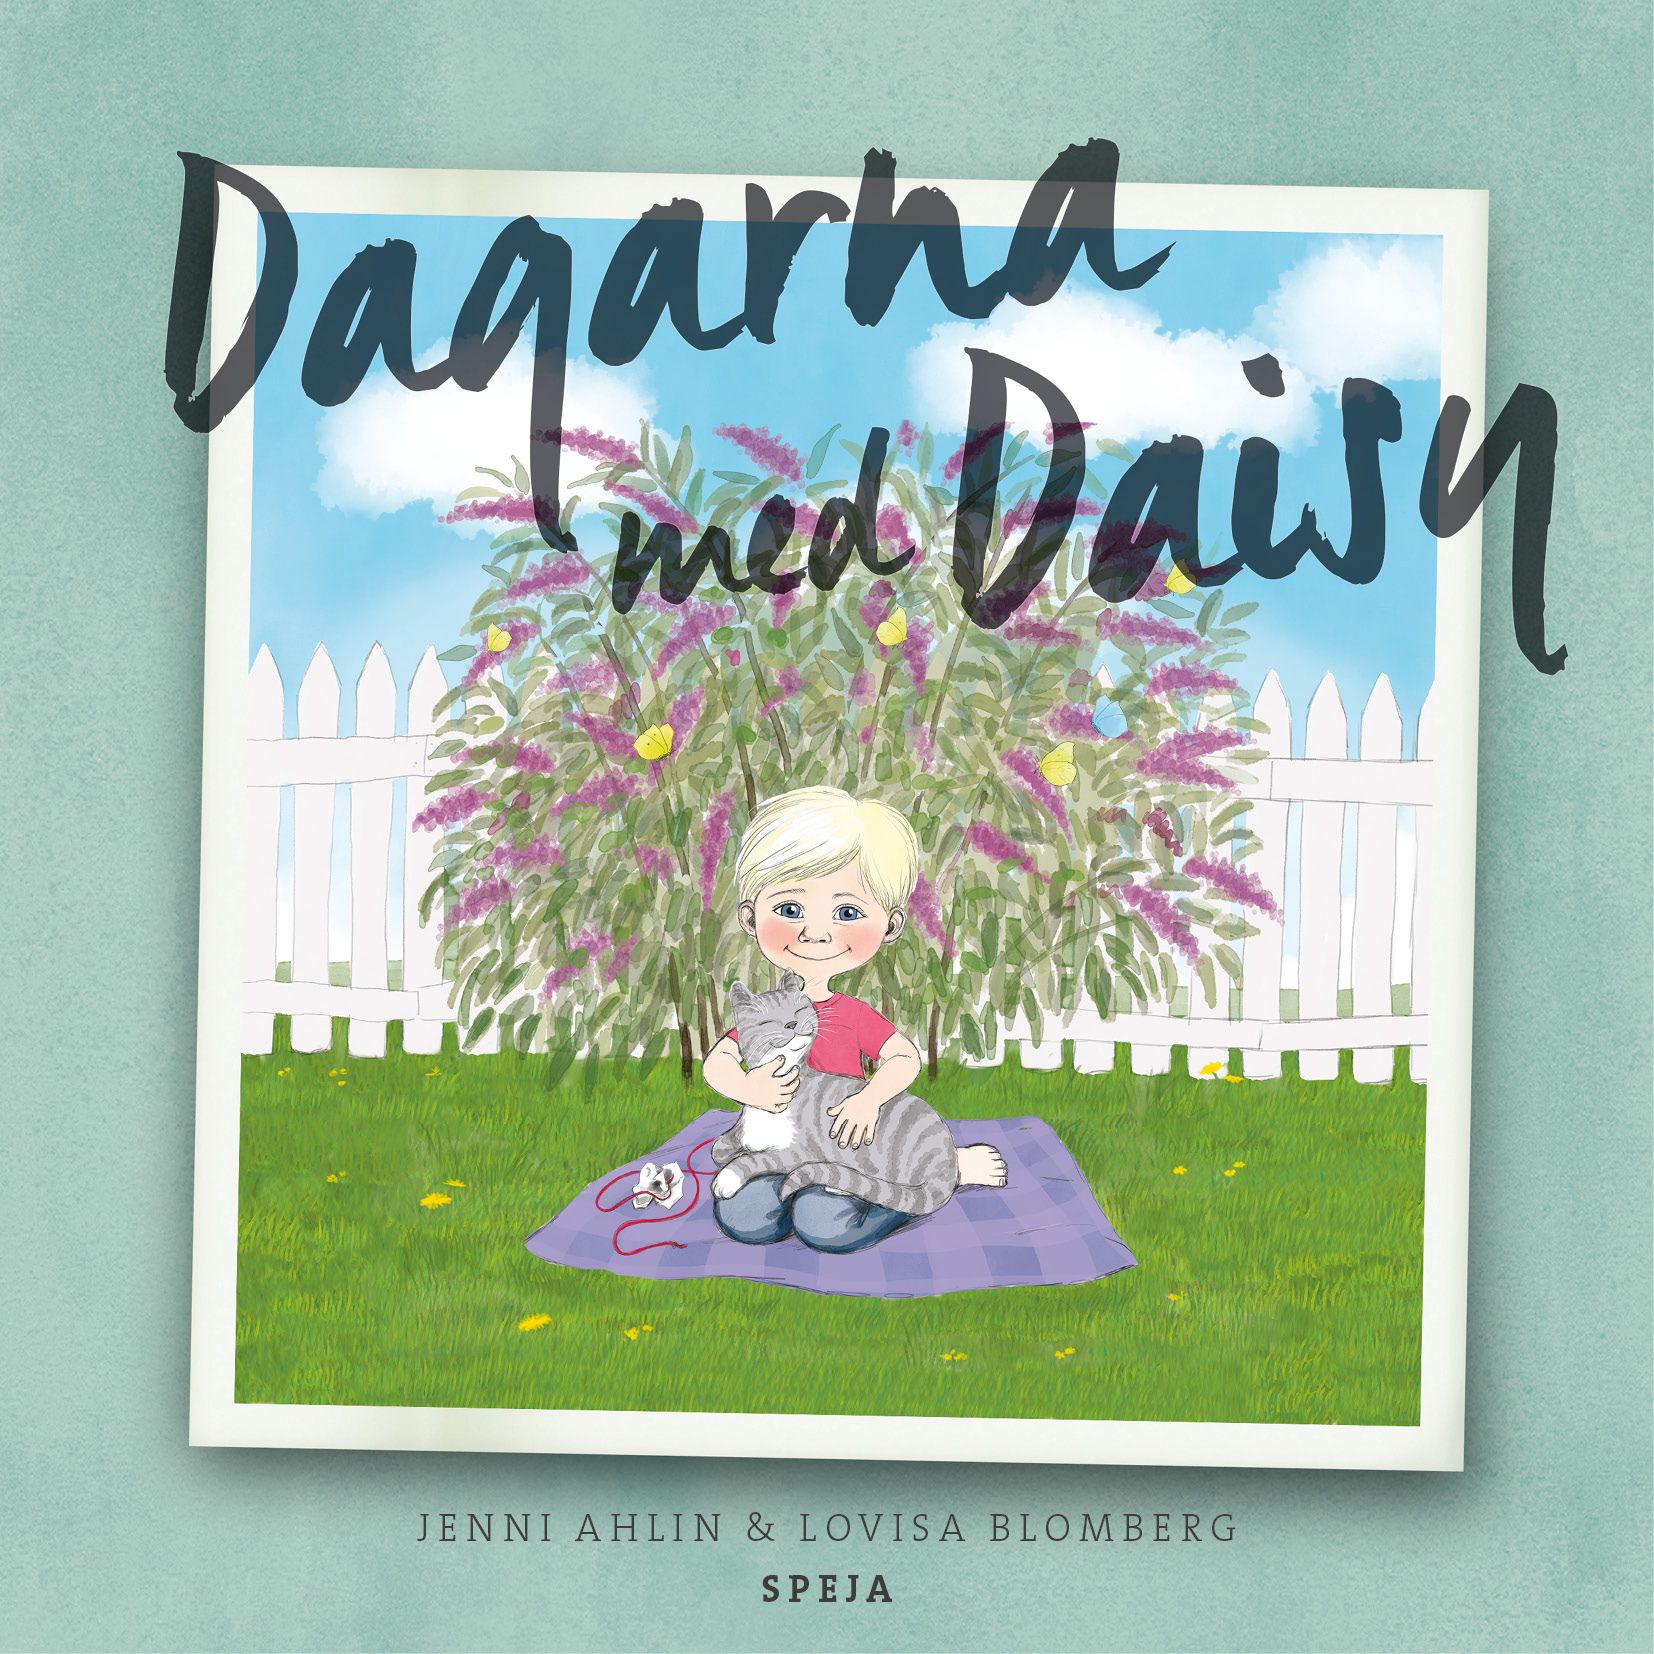 Dagarna med Daisy, audiobook by Jenny Ahlin